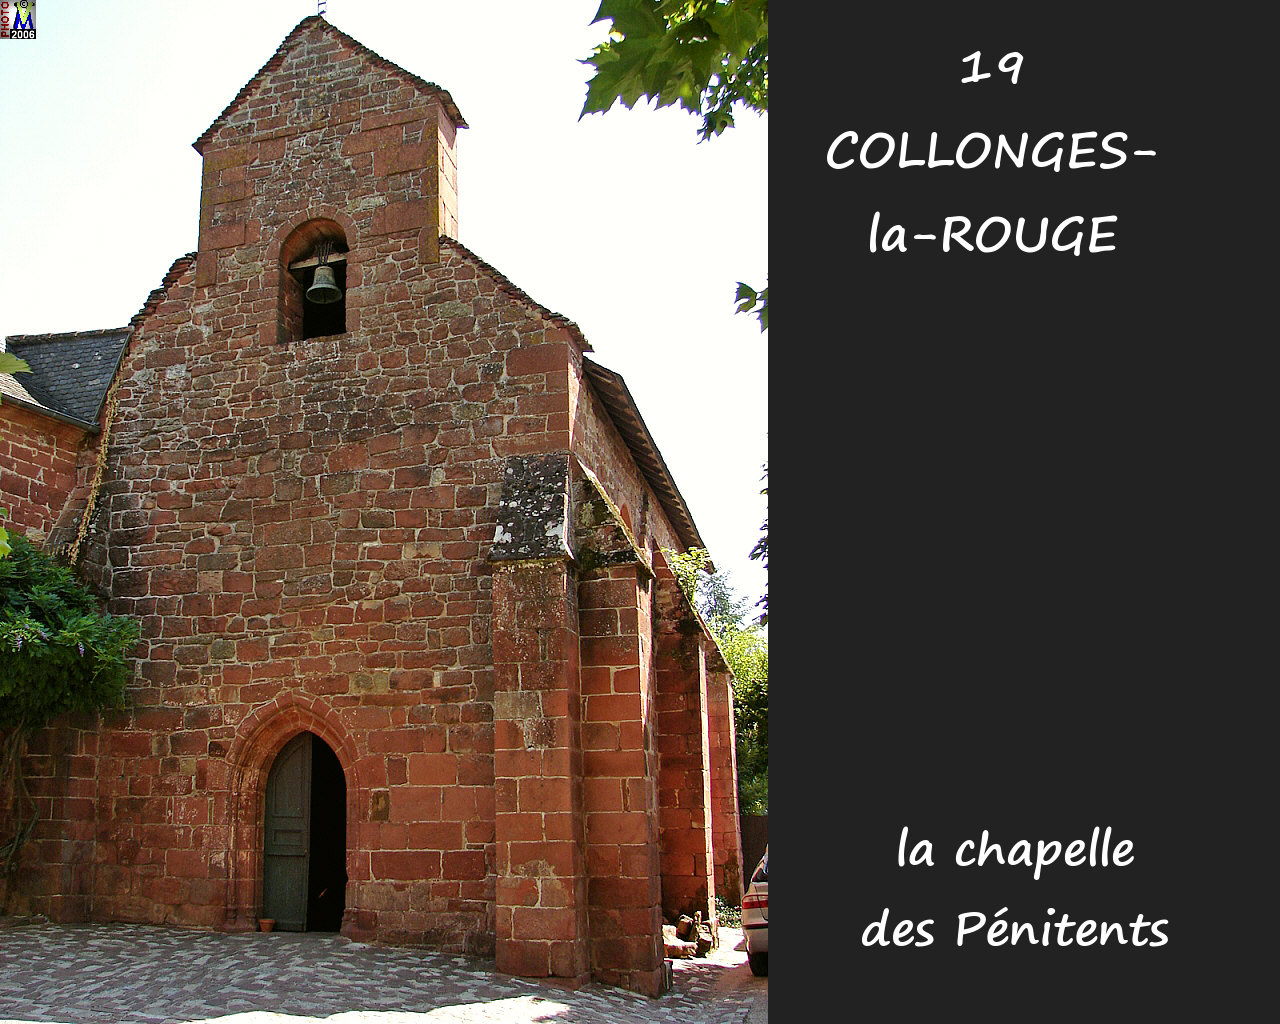 19COLLONGES-ROUGE_chapelle_100.jpg